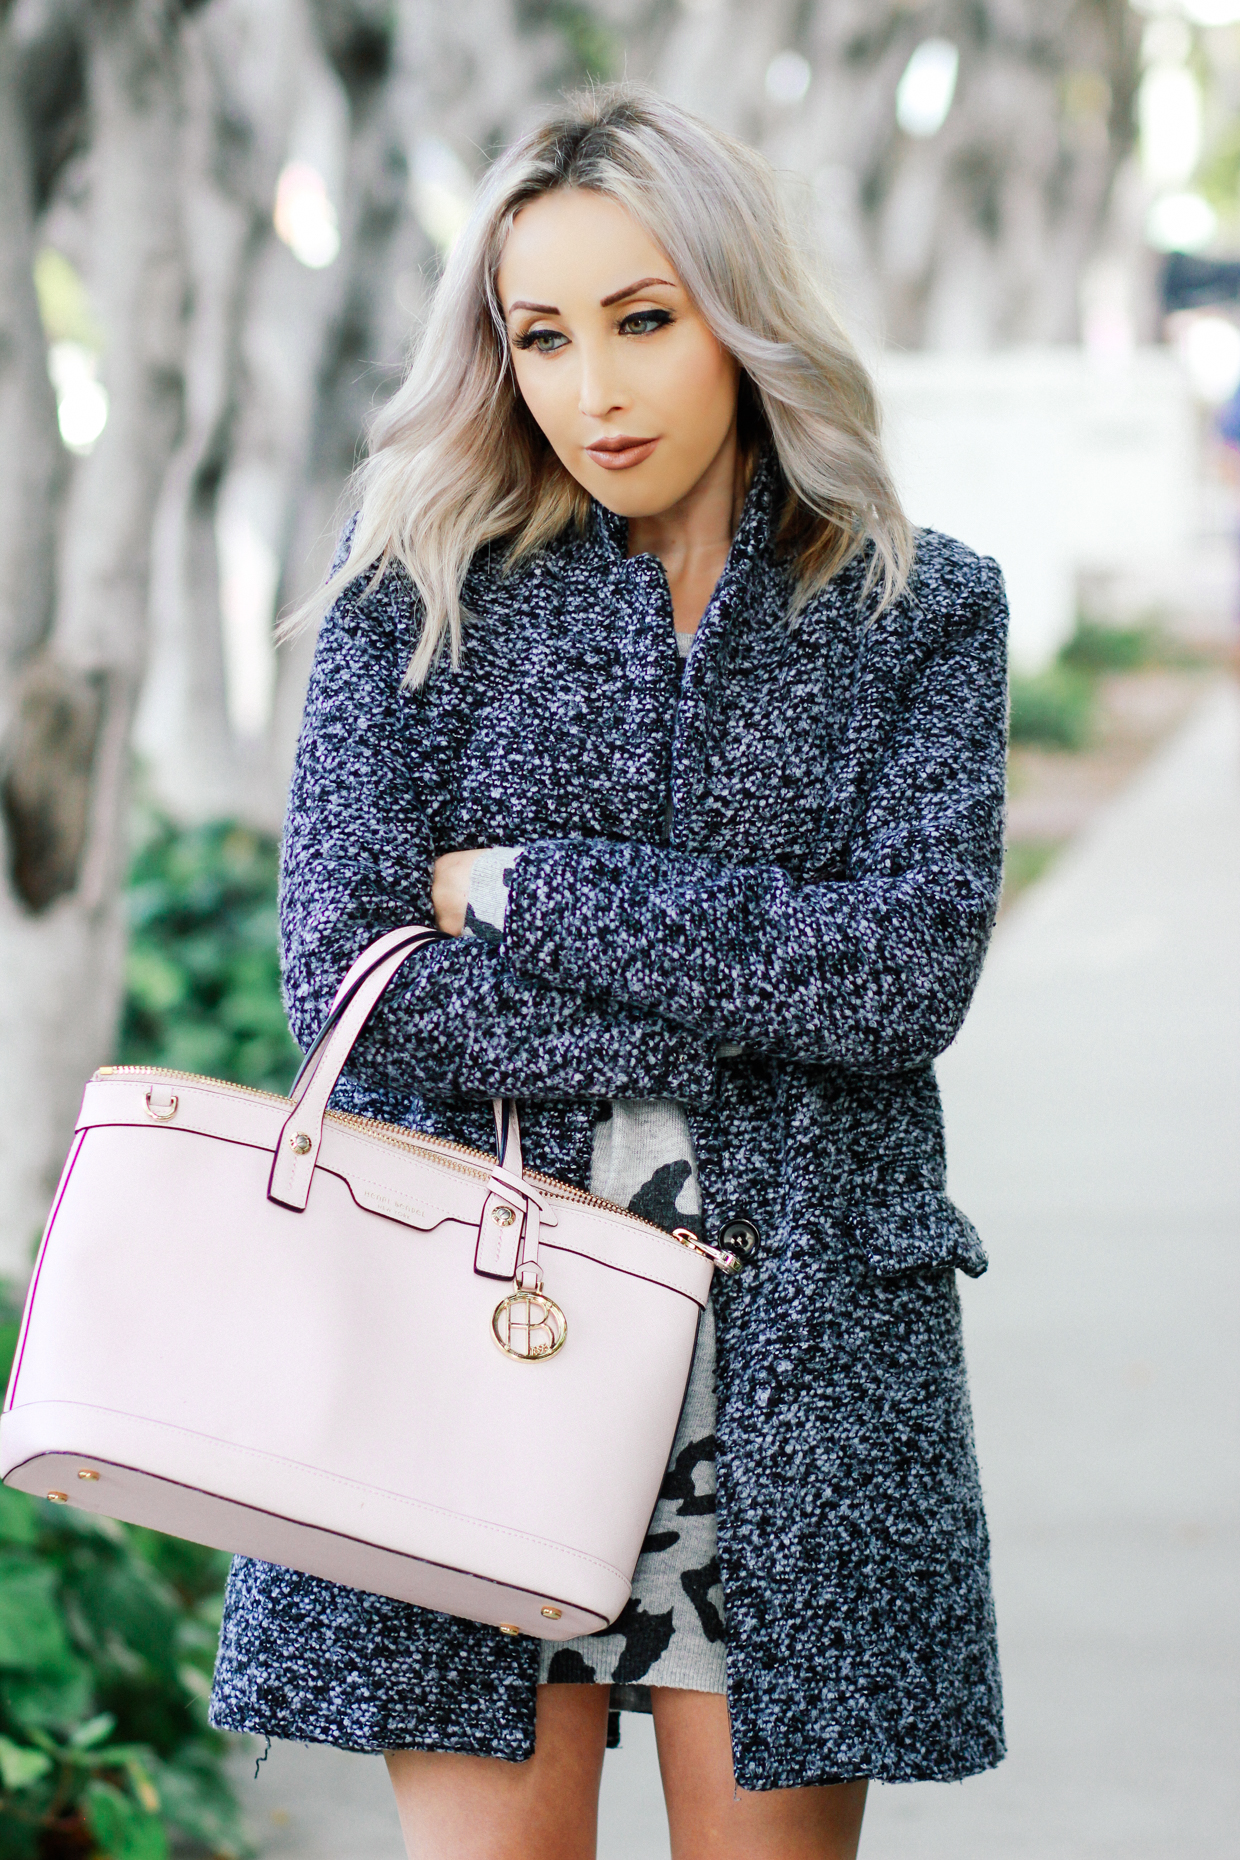 Blondie in the City | Grey Sweater Dress, Grey Coat, Pink @henribendel Bag